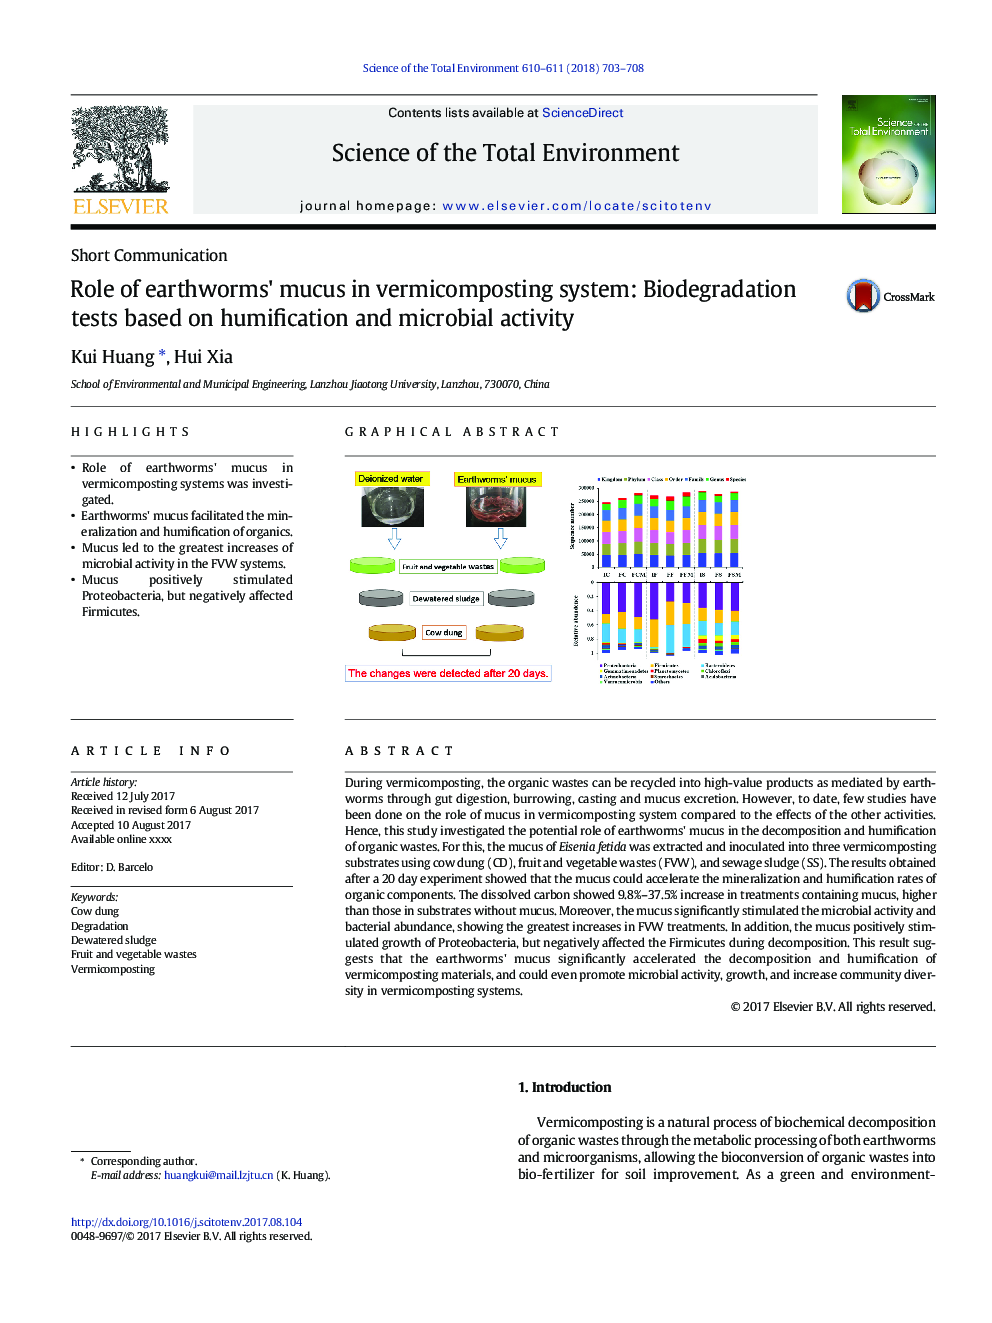 نقش اسید کرم خاکی در سیستم ورمی کمپوستینگ: آزمایشهای زیستی تجزیه بر اساس کمالگویی و فعالیت میکروبی